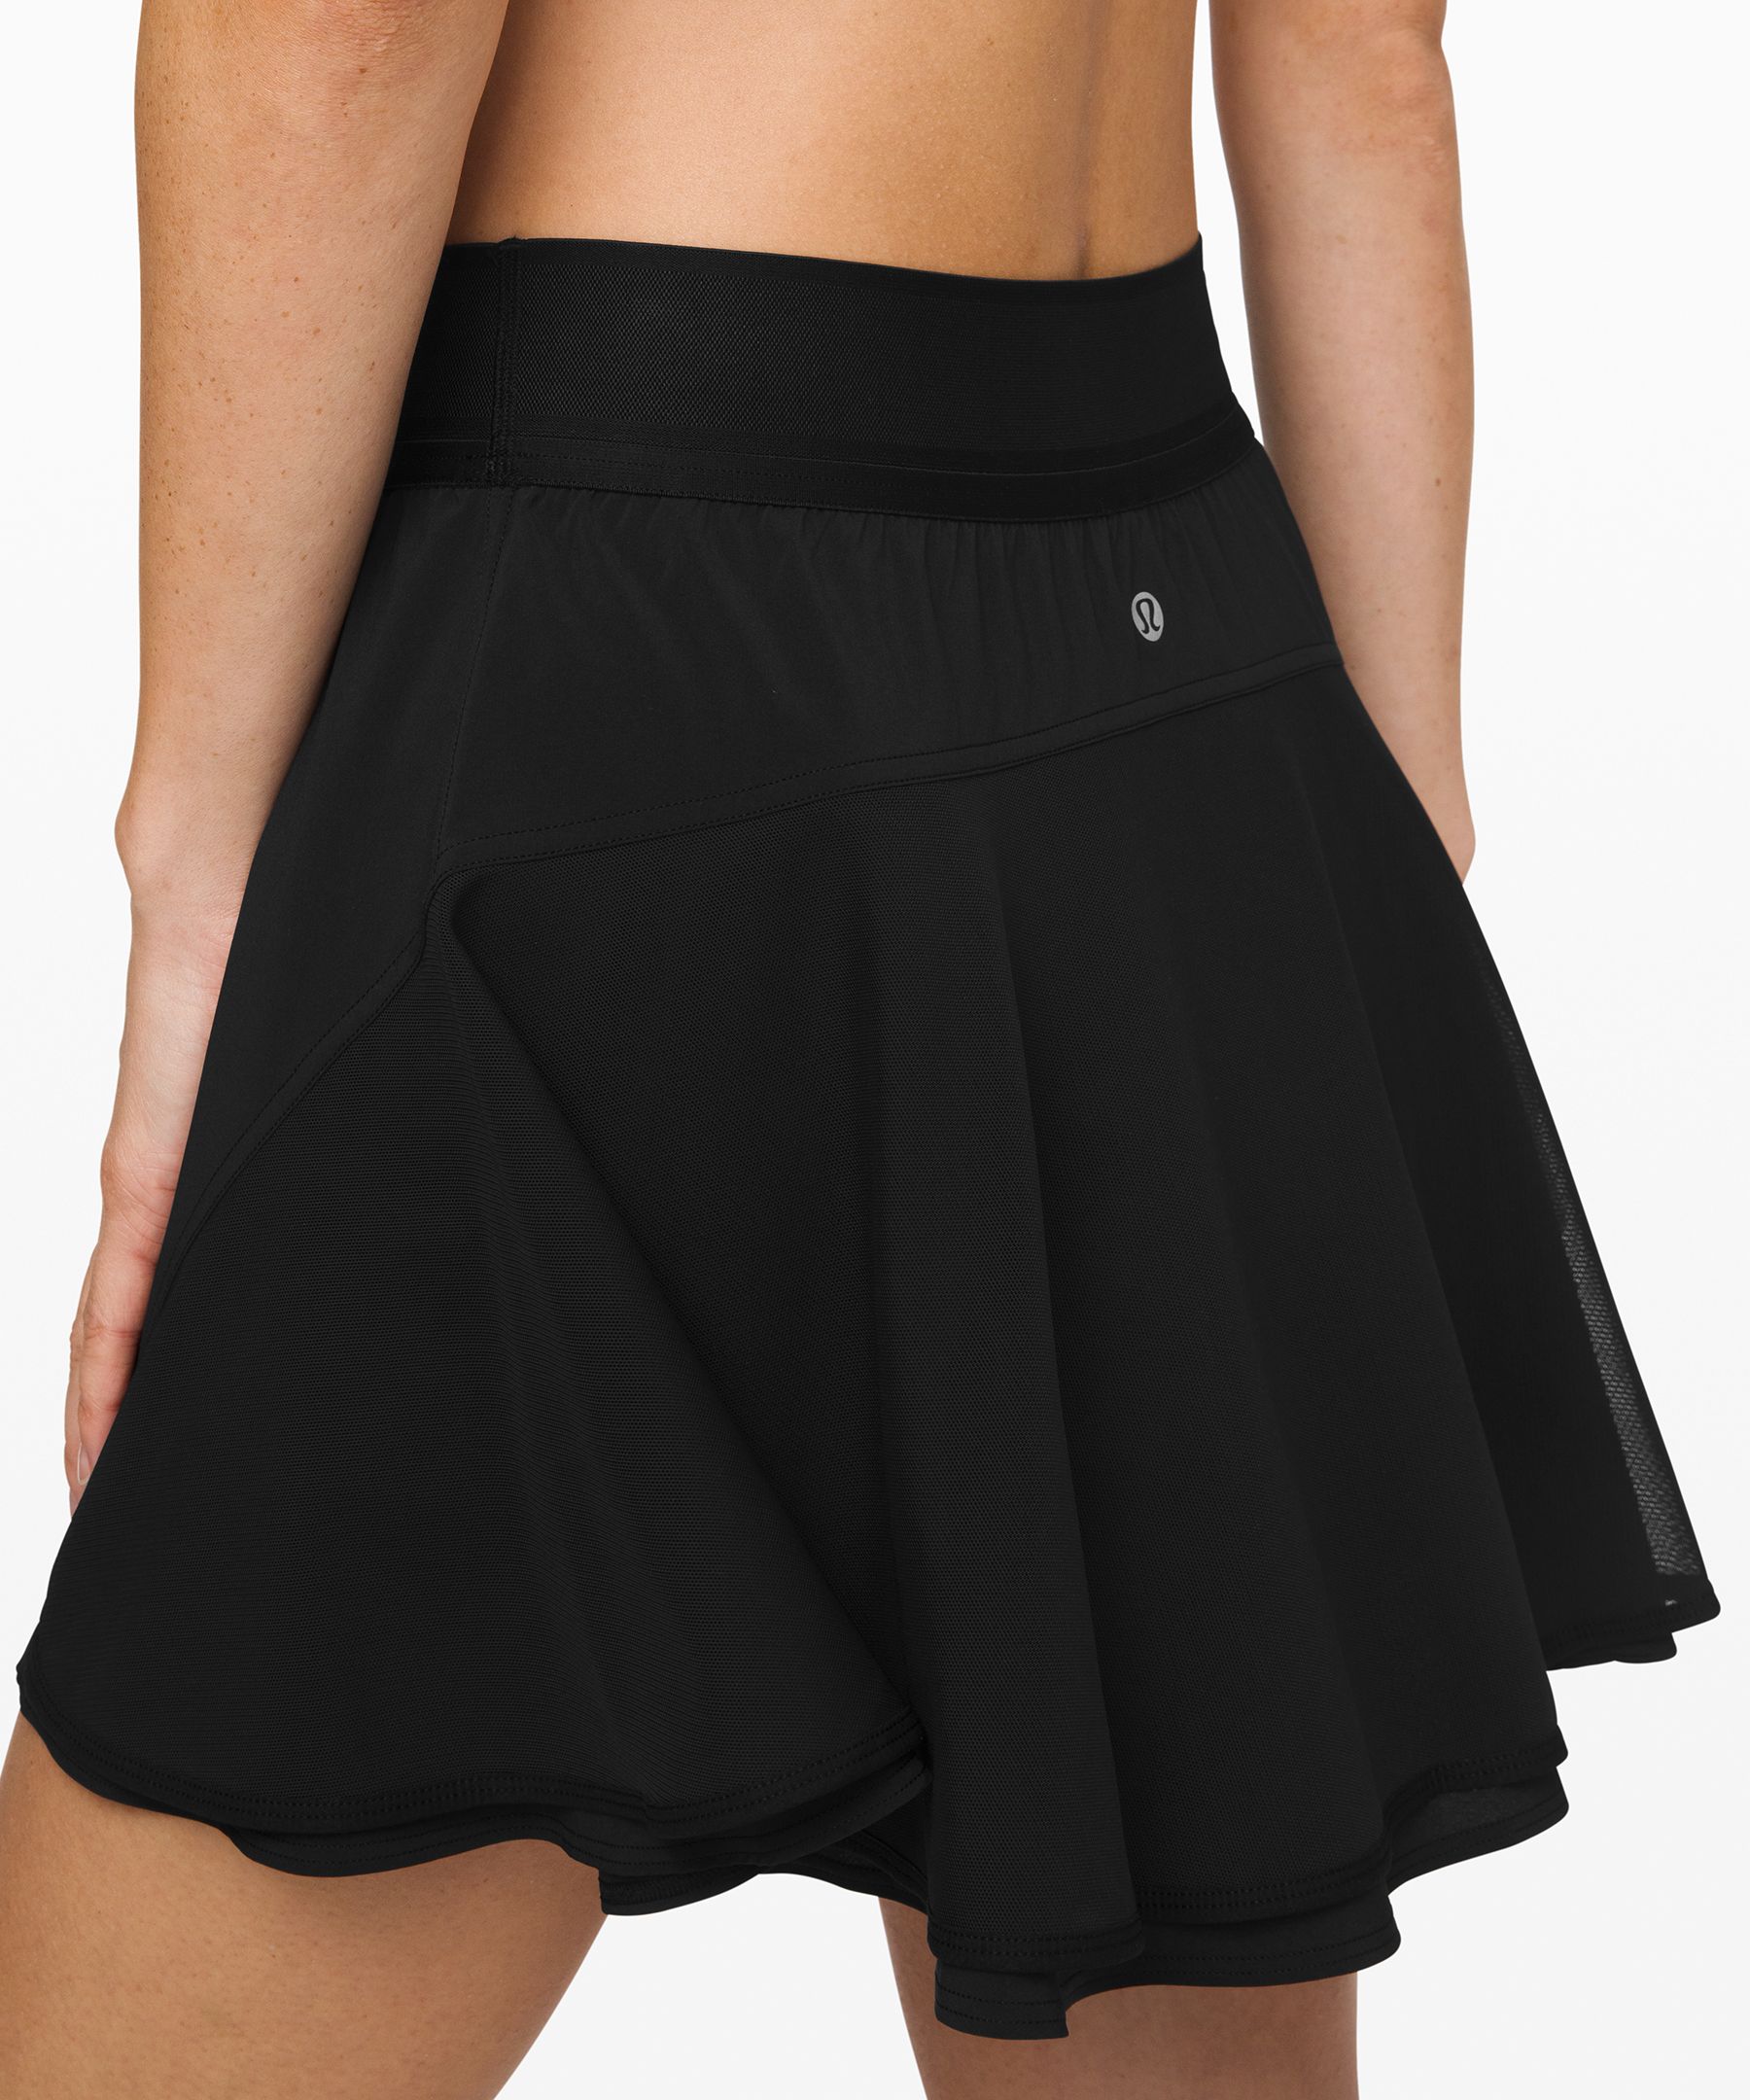 lululemon skirt tall